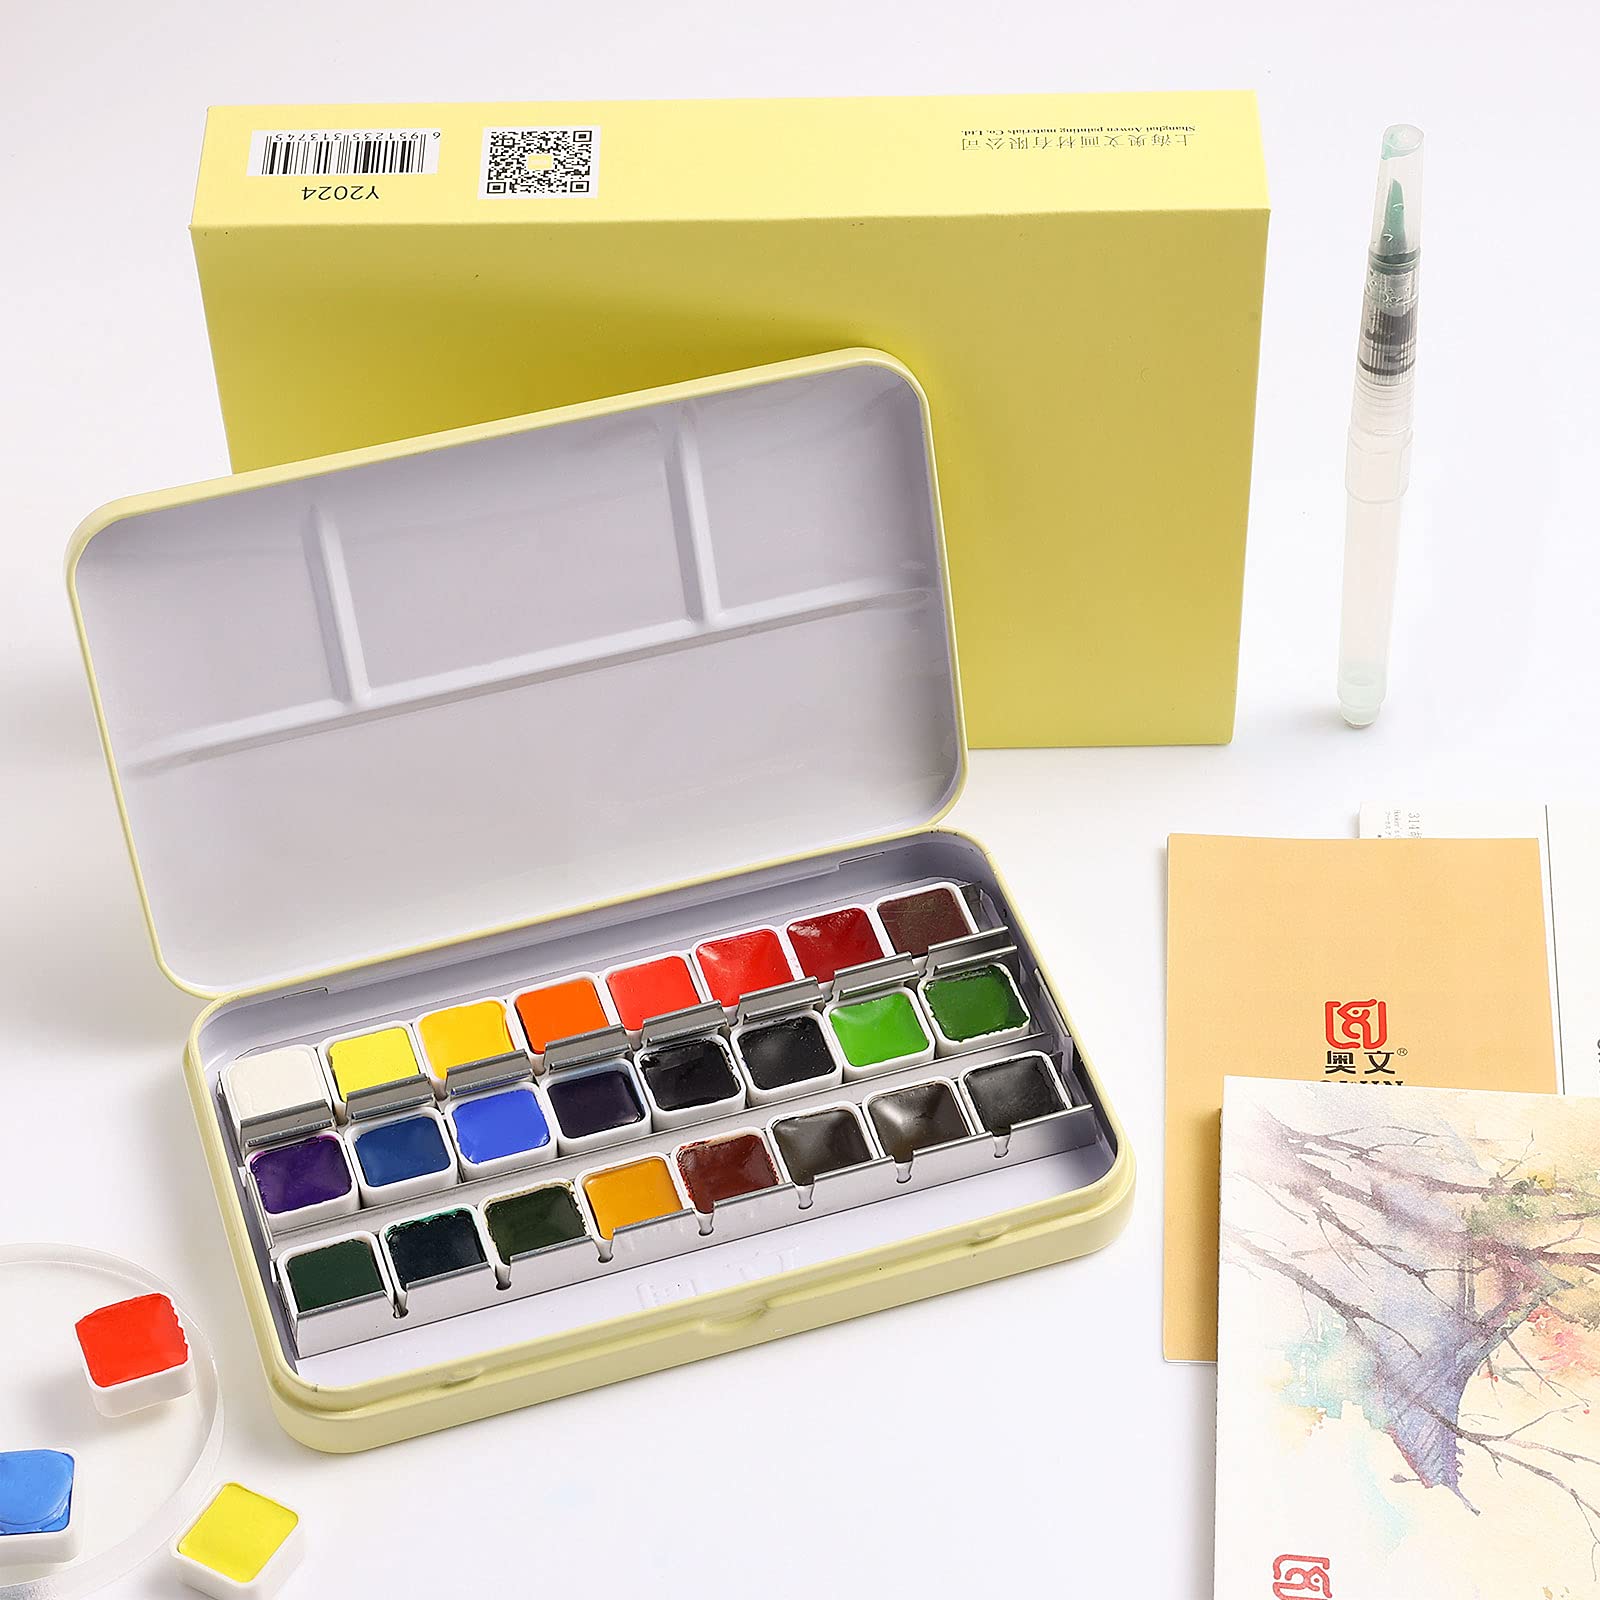 Artists Loft Fundamentals Watercolor Pan Set 36 Colors